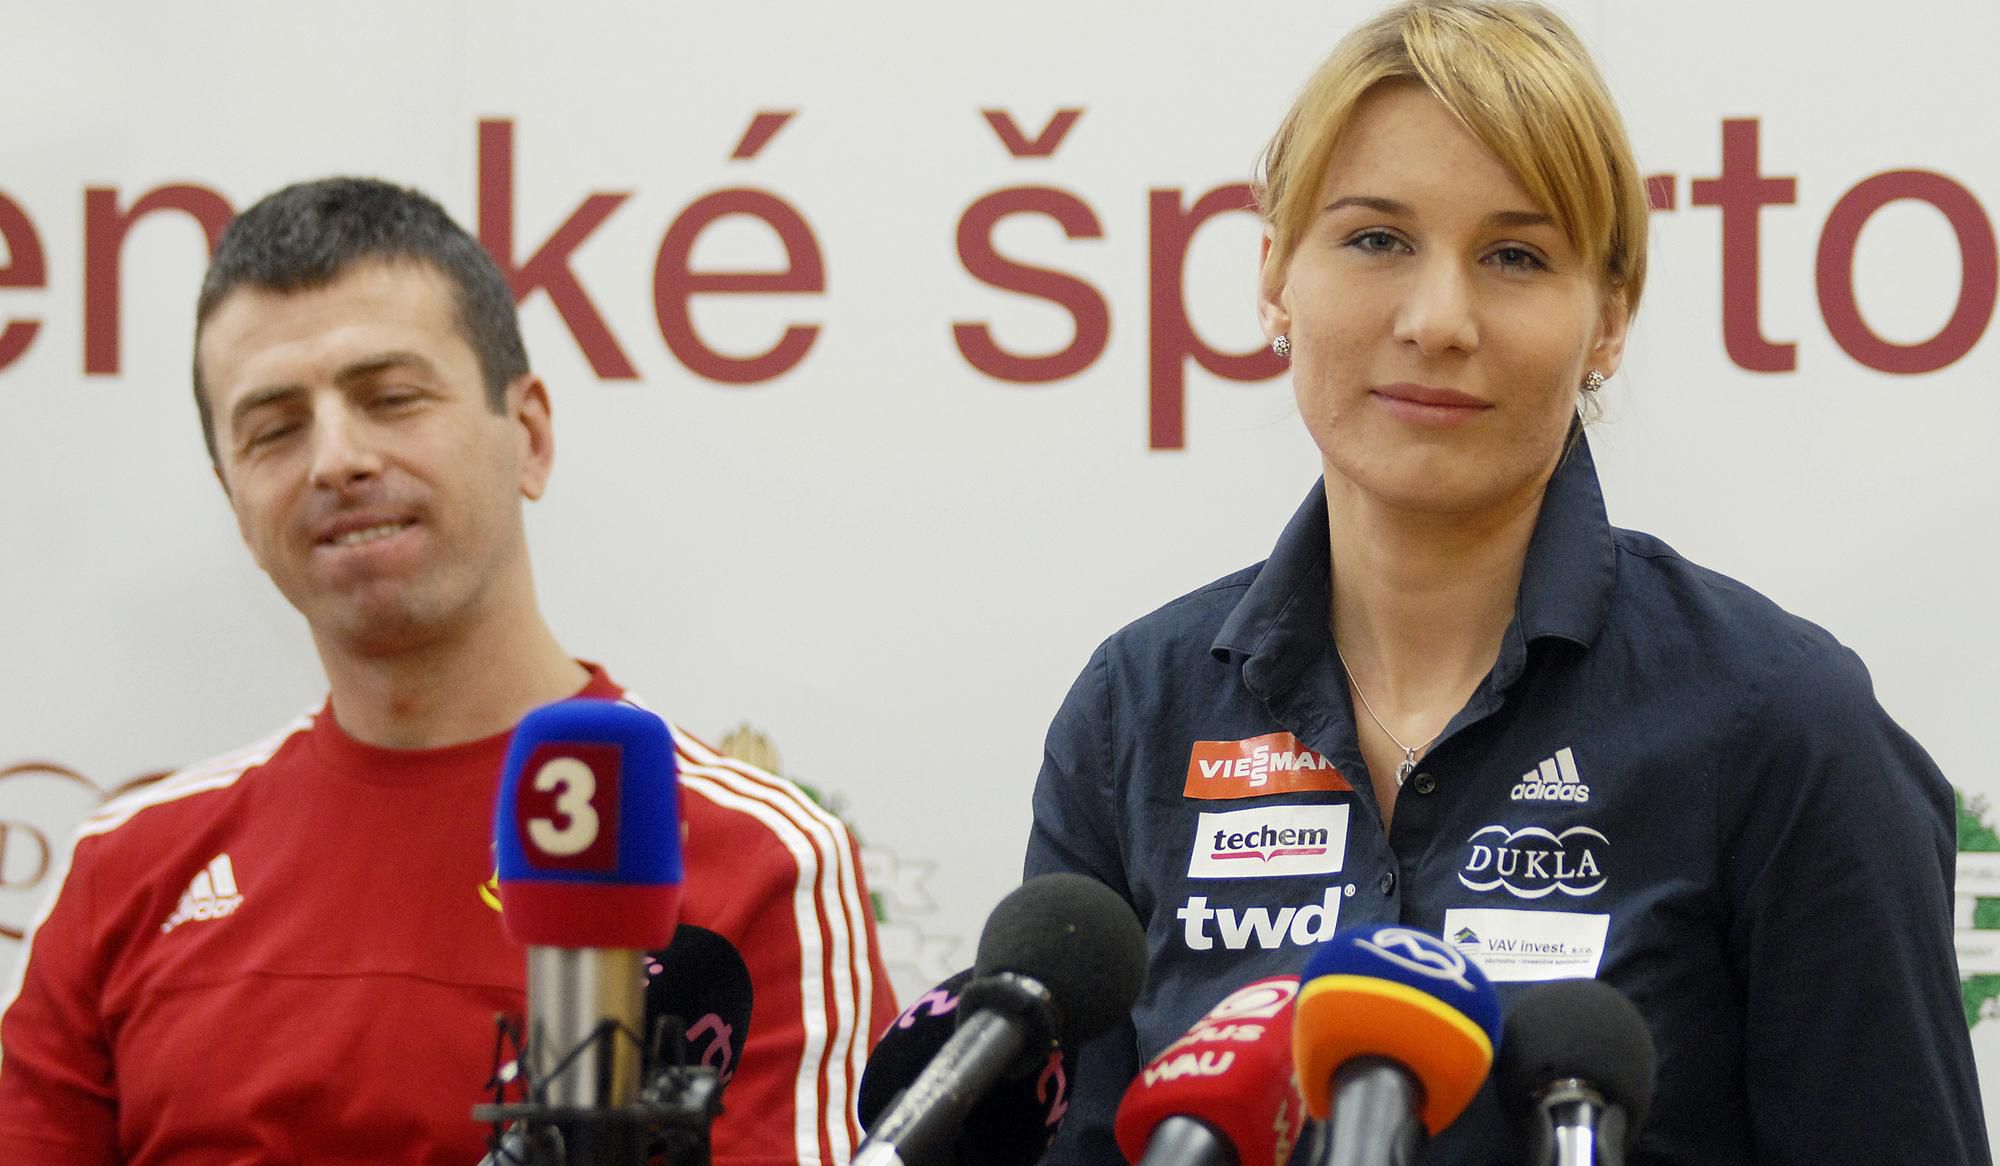 Slovenská biatlonová reprezentantka Anastasia Kuzminová a jej manžel Daniel Kuzmin.